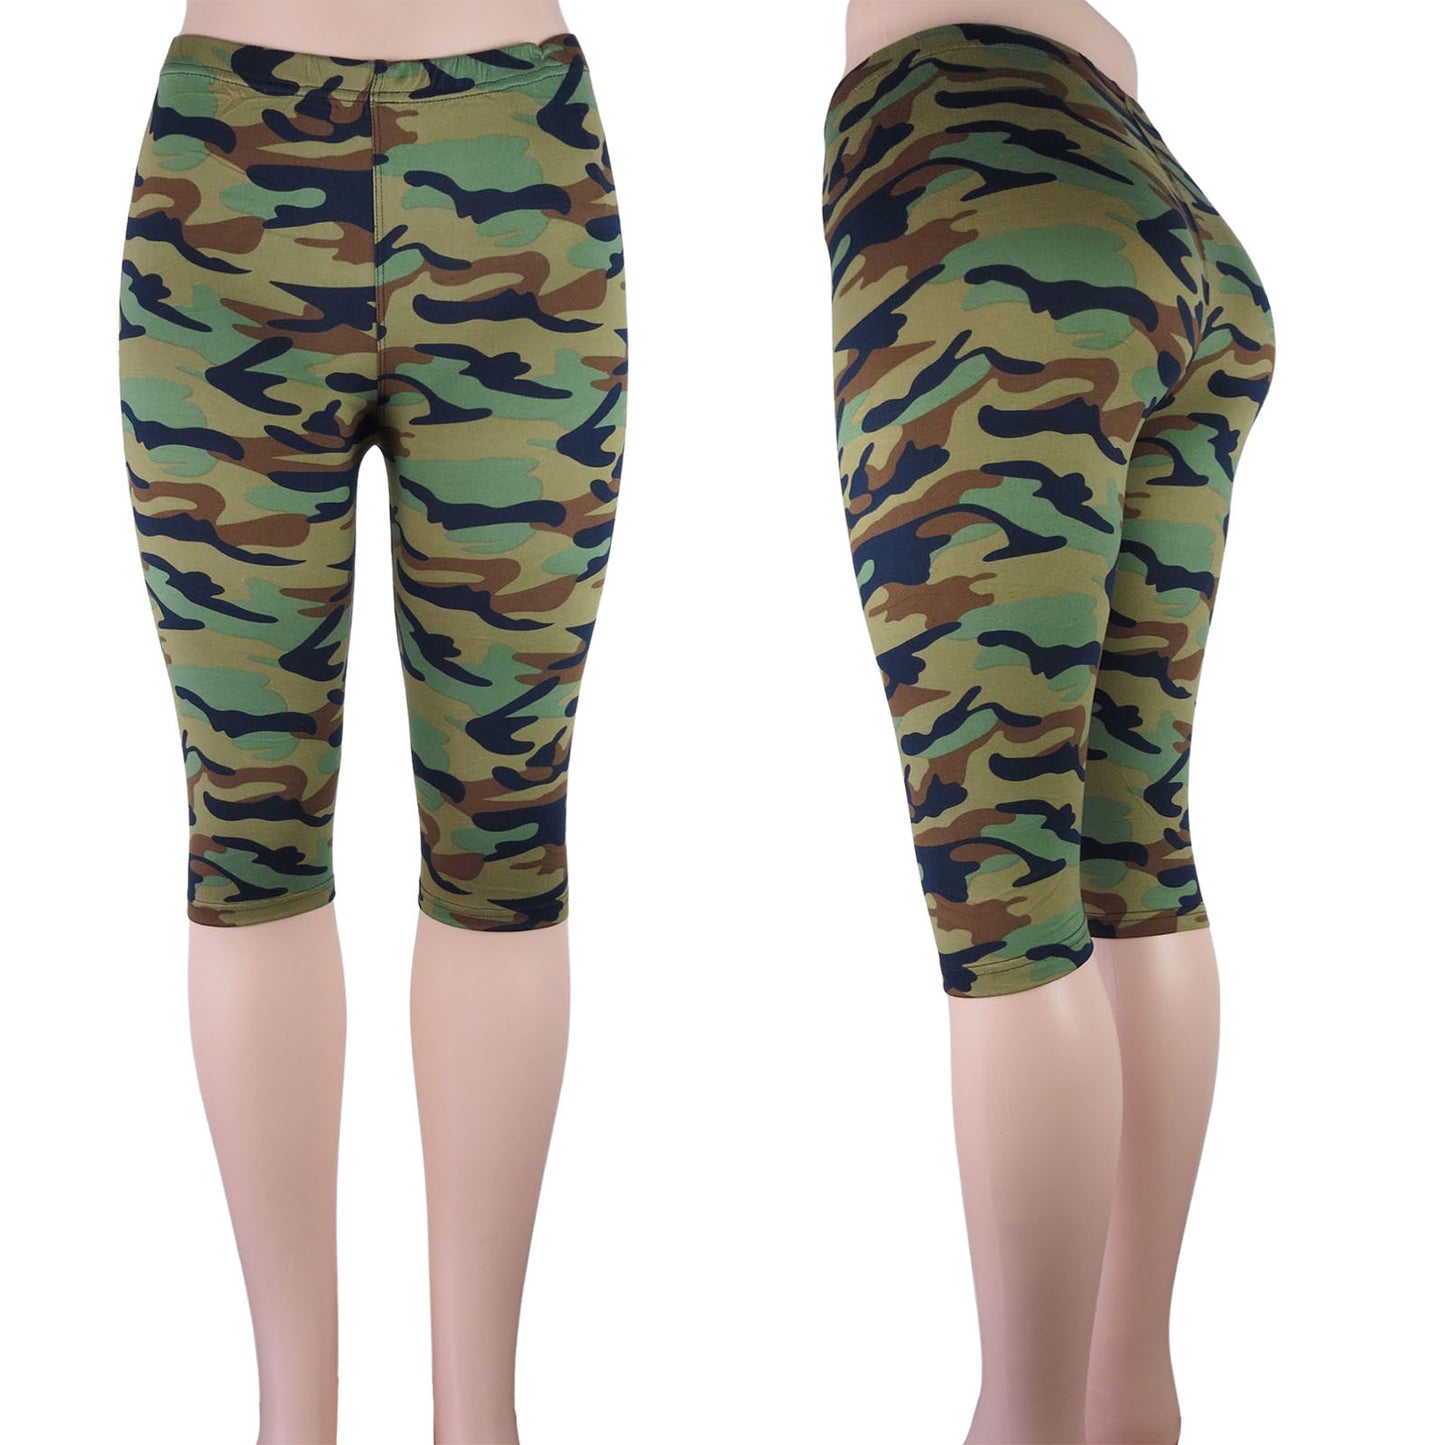 capri camouflage leggings in green black and brown multicolor camo print wholesale